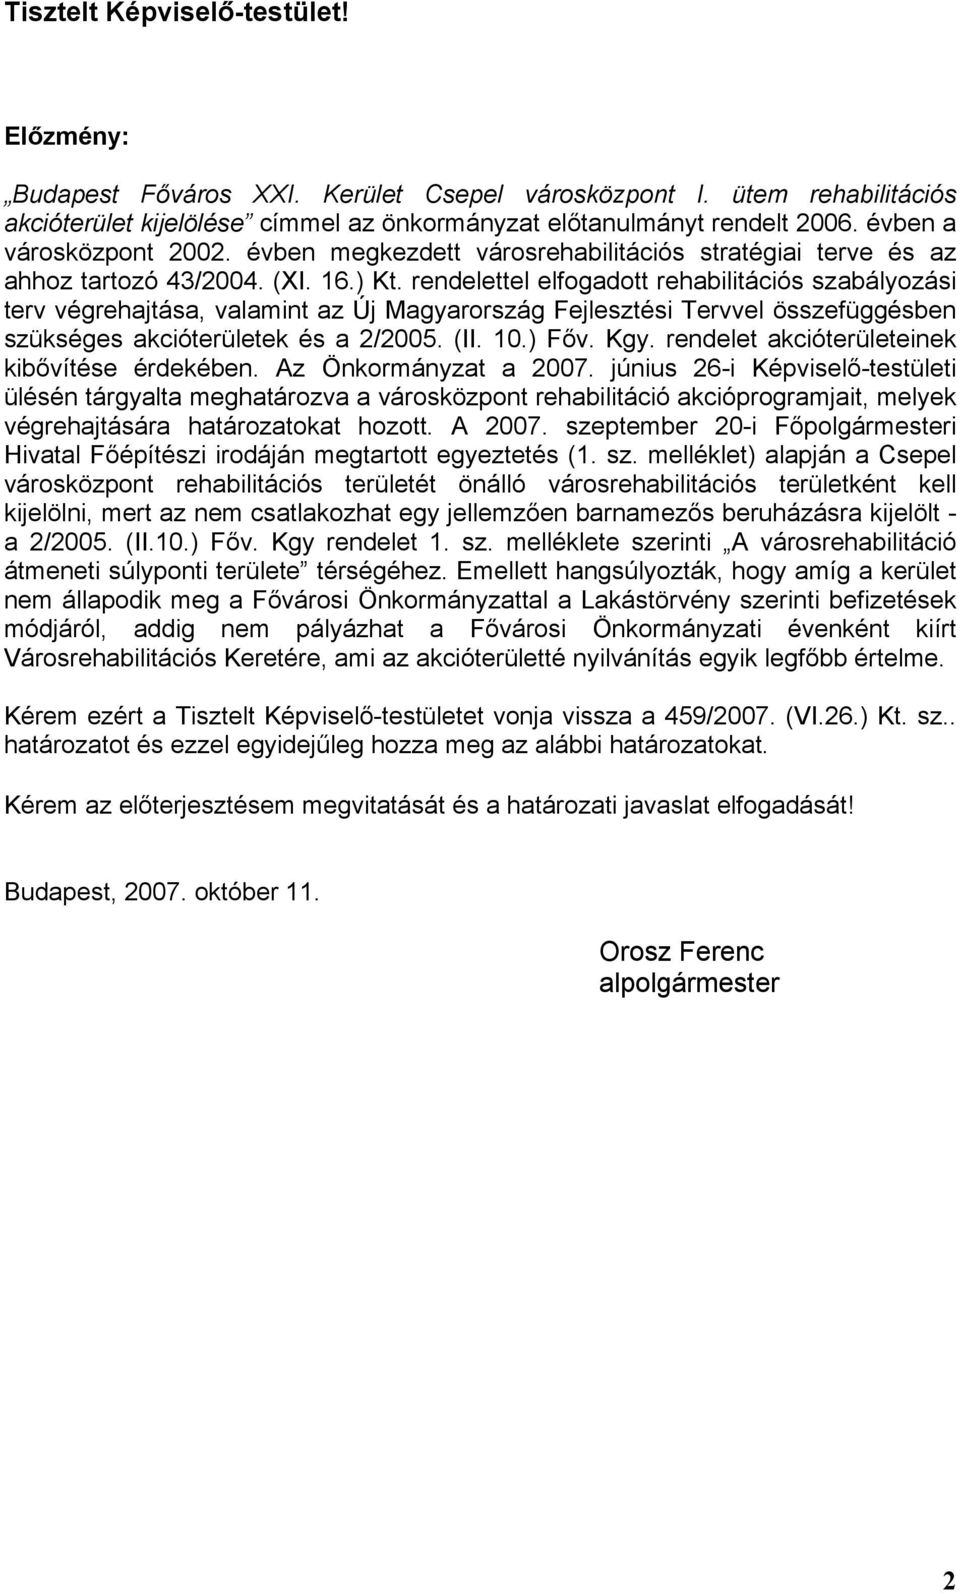 rendelettel elfogadott rehabilitációs szabályozási terv végrehajtása, valamint az Új Magyarország Fejlesztési Tervvel összefüggésben szükséges akcióterületek és a 2/2005. (II. 10.) Főv. Kgy.